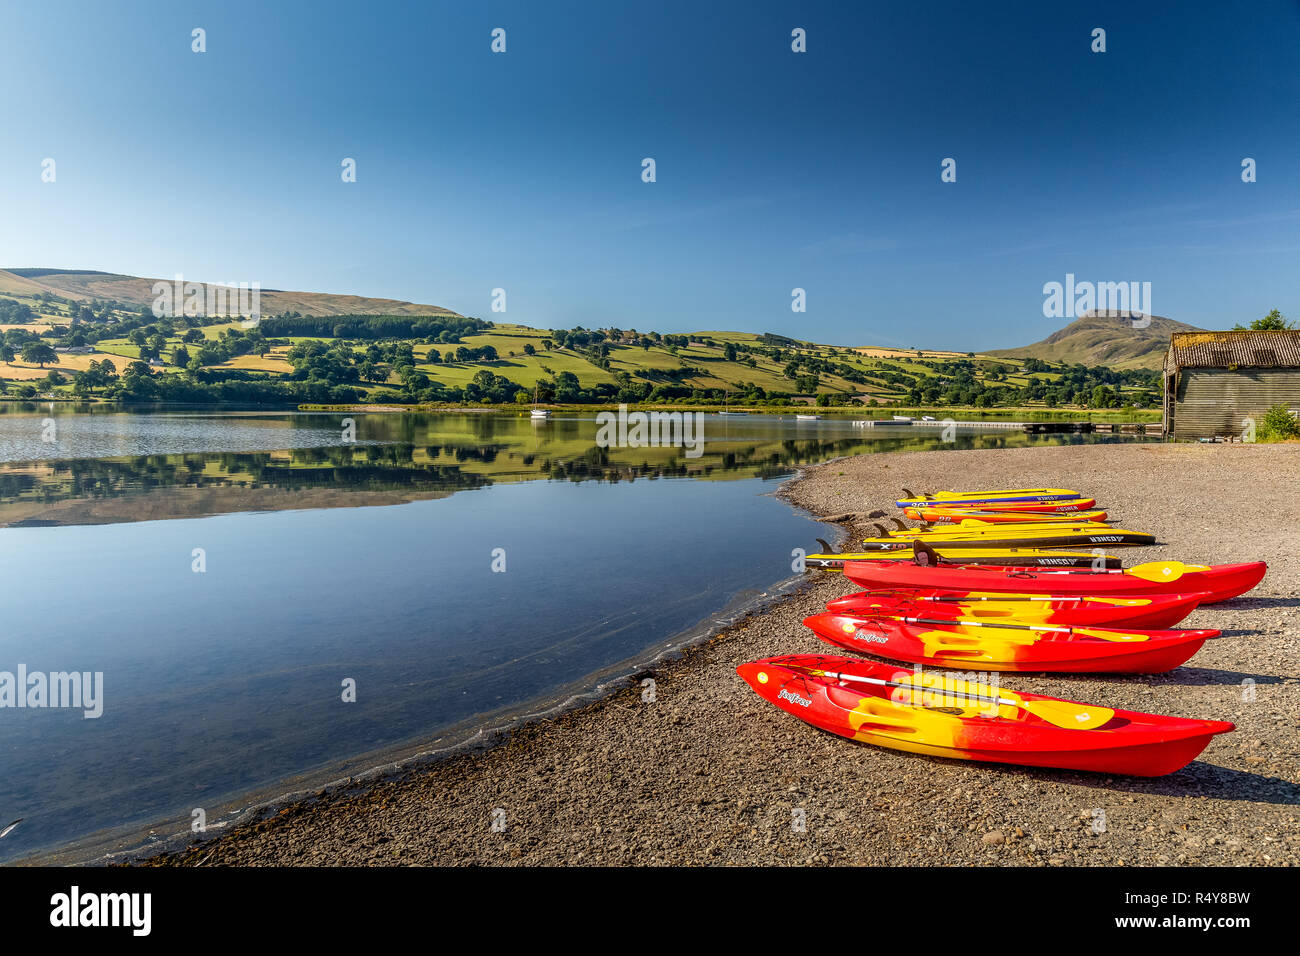 Le lac de Bala, ou Llyn Tegid dans Gwynedd, Pays de Galles, Royaume-Uni. Connu pour son attrait pour les sports nautiques, une ligne de kayaks sur le rivage. Banque D'Images